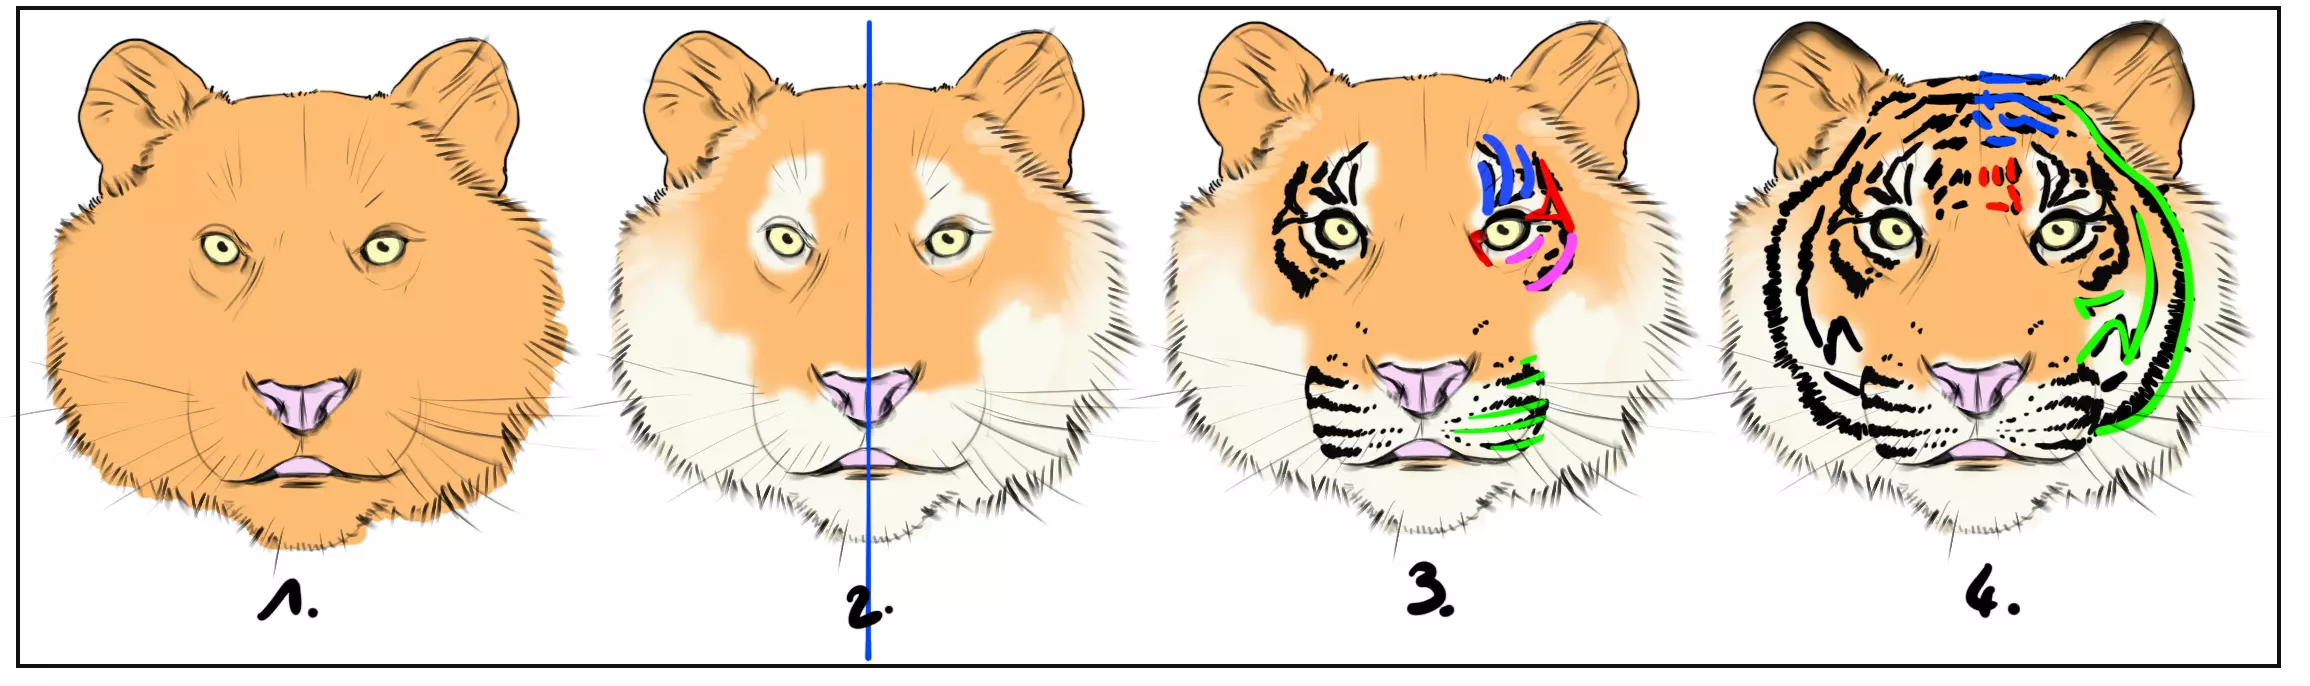 dessin de la fourrure de la tête d’un tigre